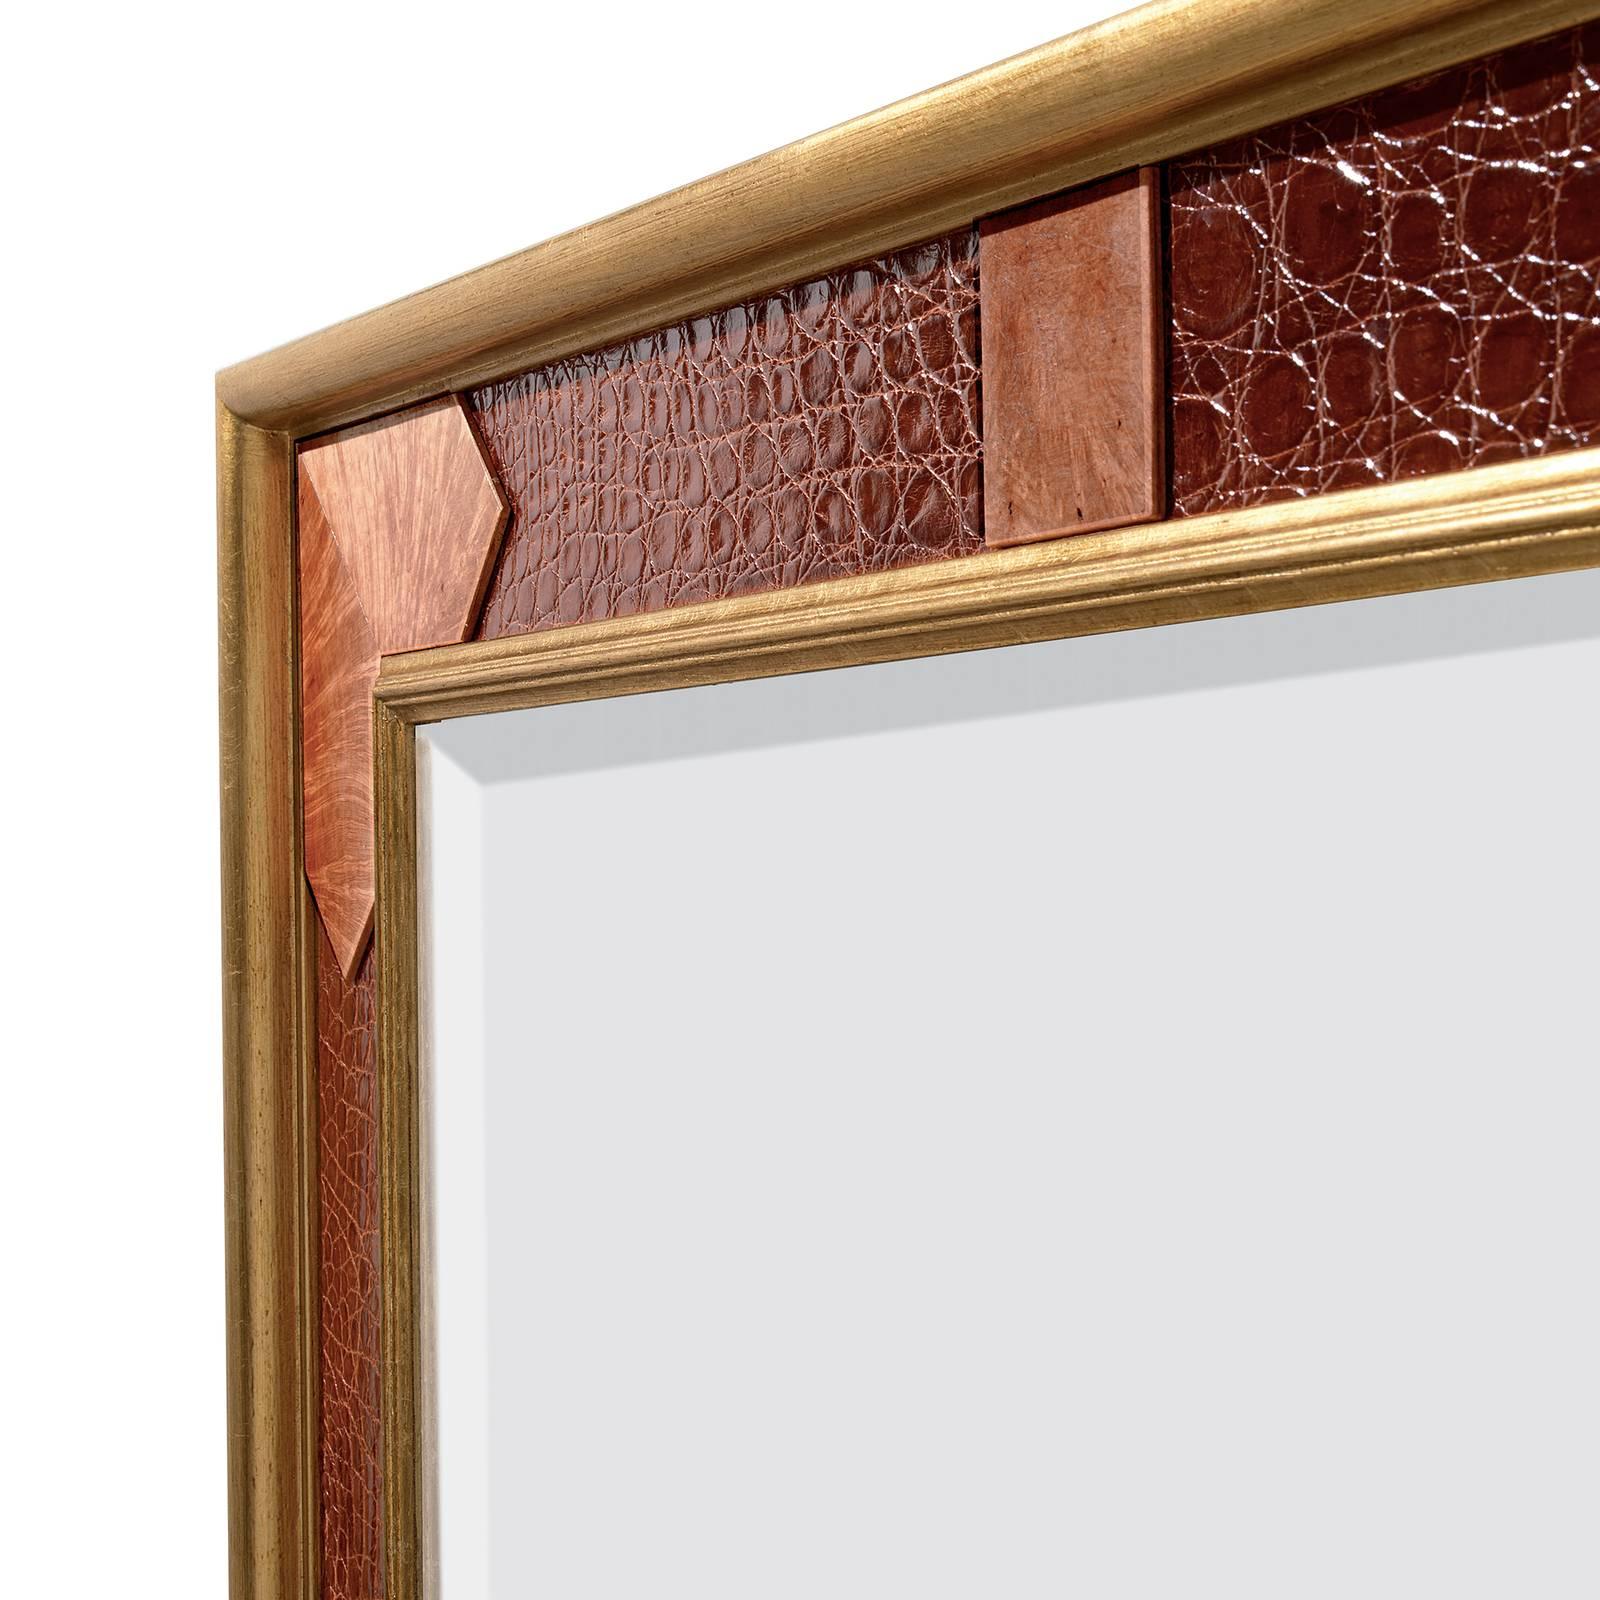 Dank seiner exquisiten Verarbeitung und der Verwendung hochwertiger Materialien wird dieser Spiegel sowohl in einer klassischen als auch in einer modernen Einrichtung einen raffinierten Eindruck hinterlassen. Die Rückseite in Mahagoni unterstützen